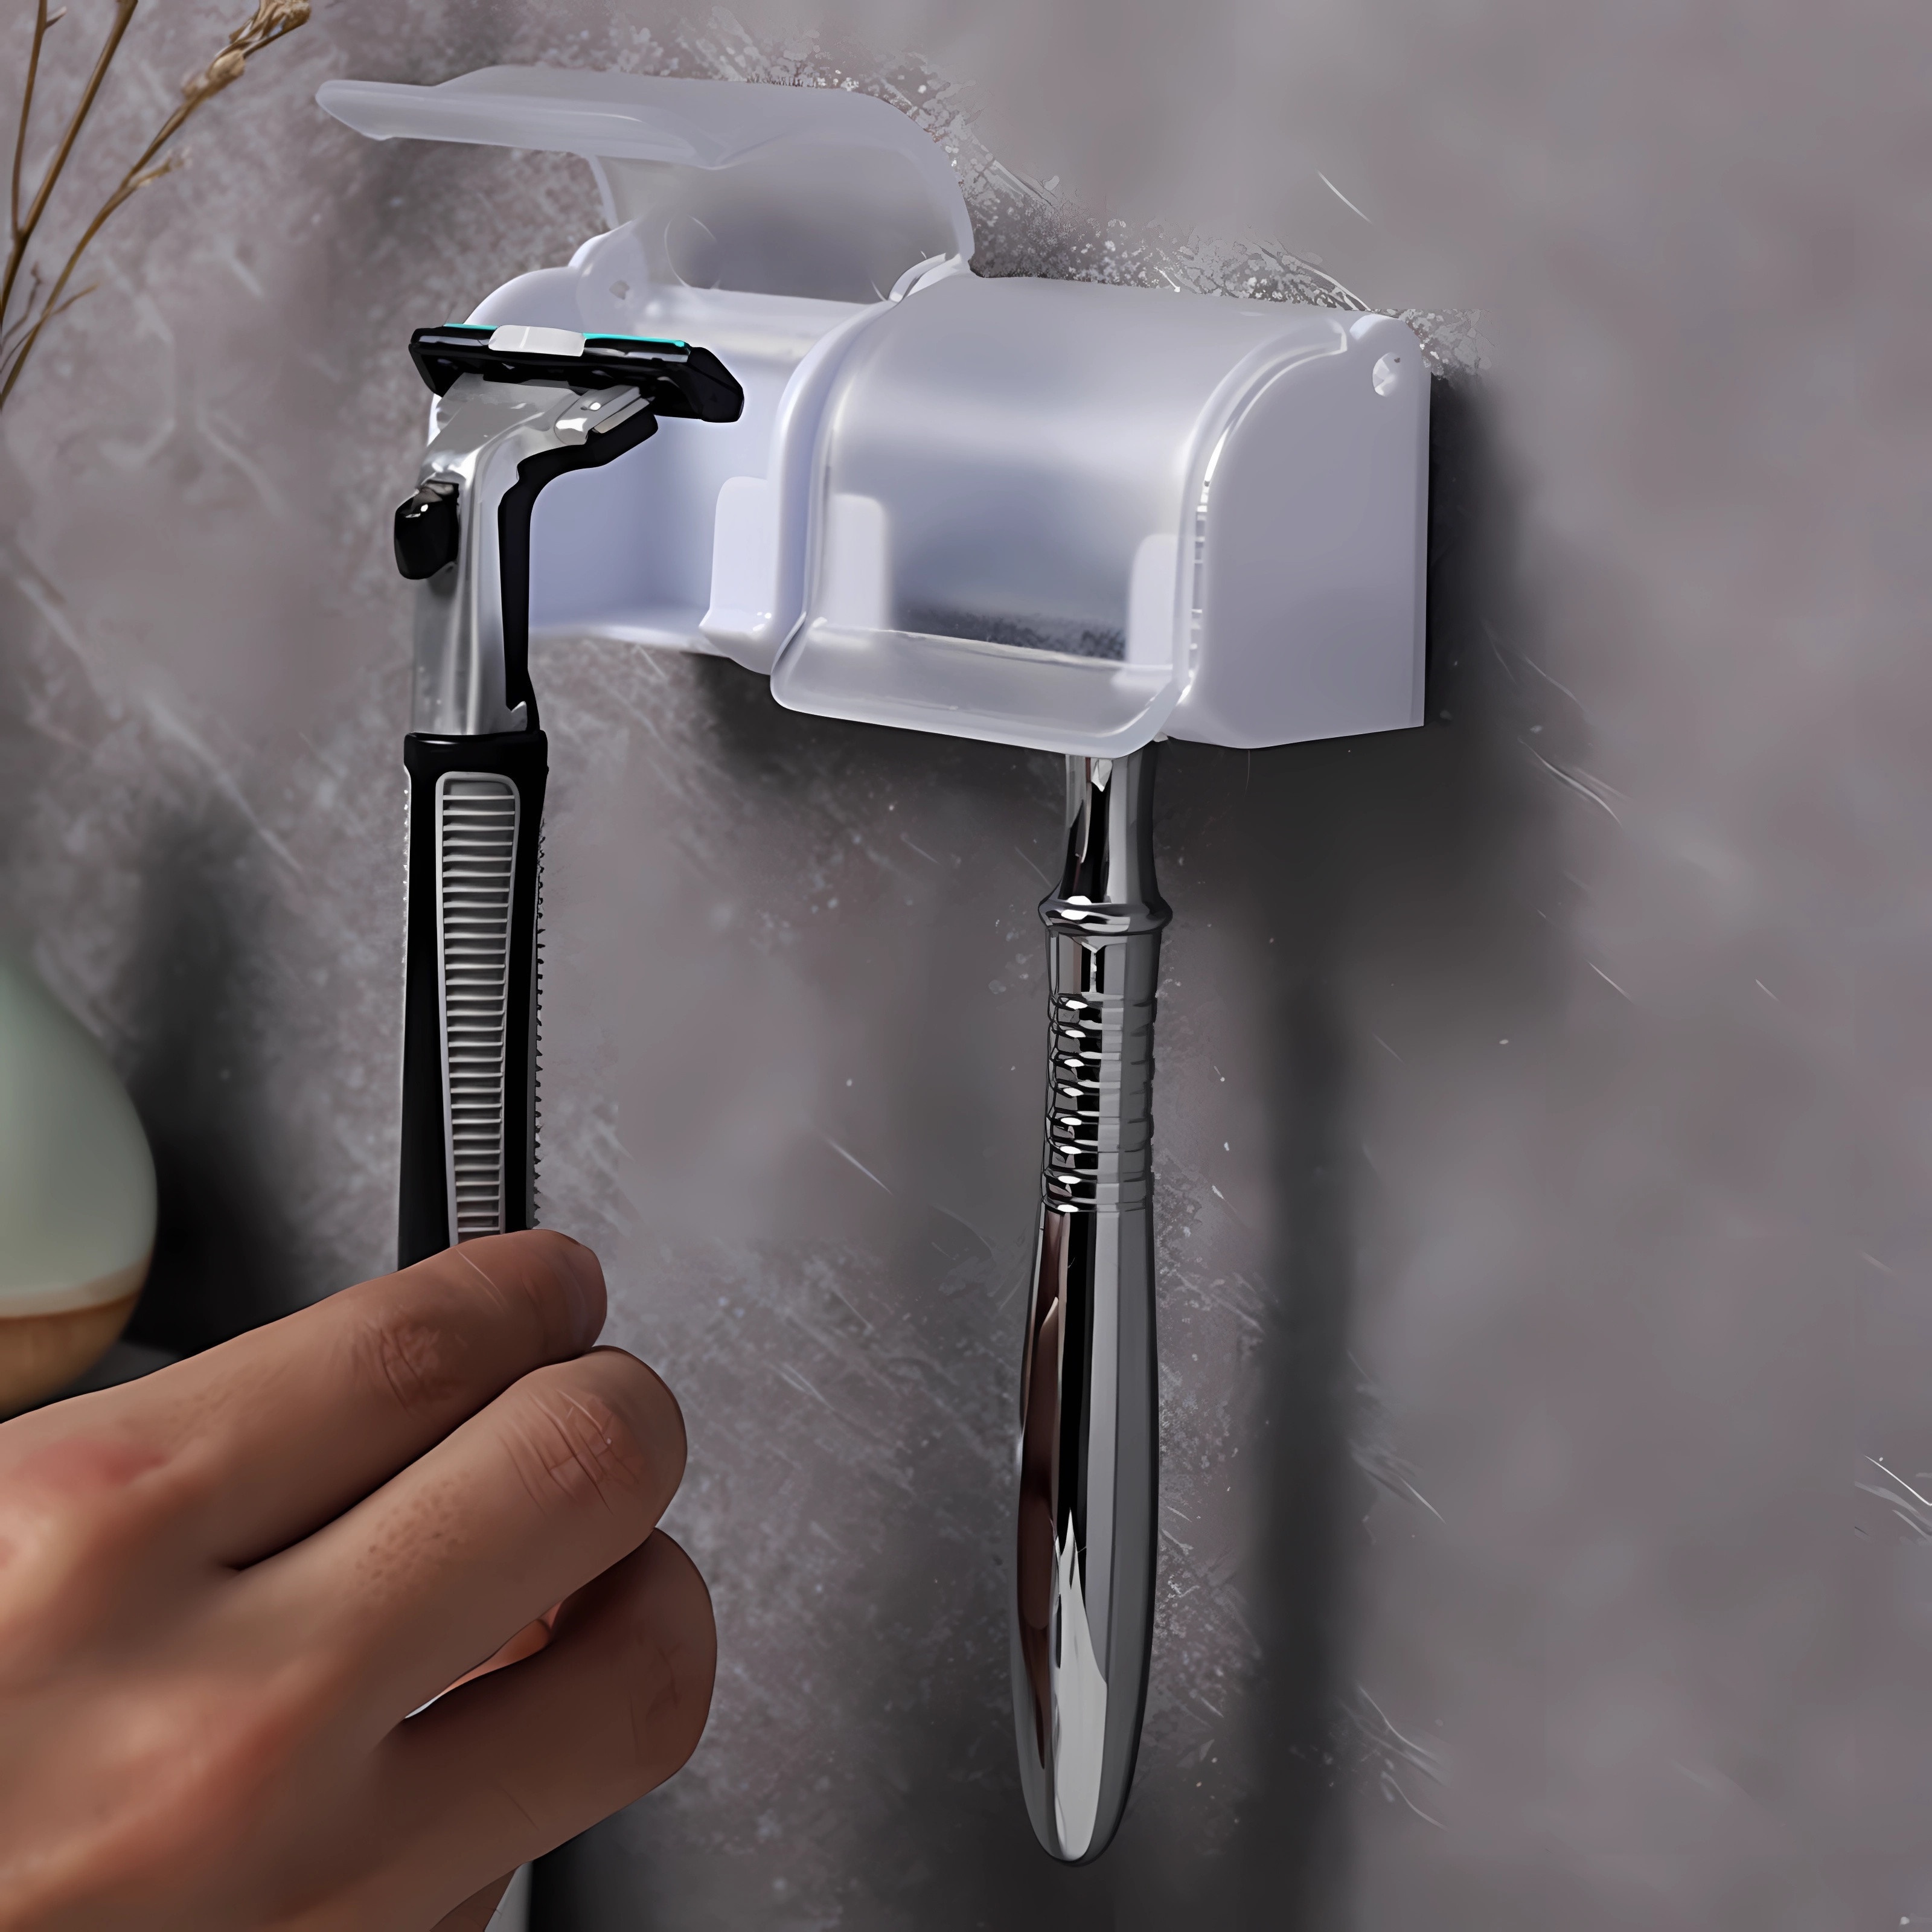 Razor Hanger For Shower,electric Toothbrush Holders,razor Holder